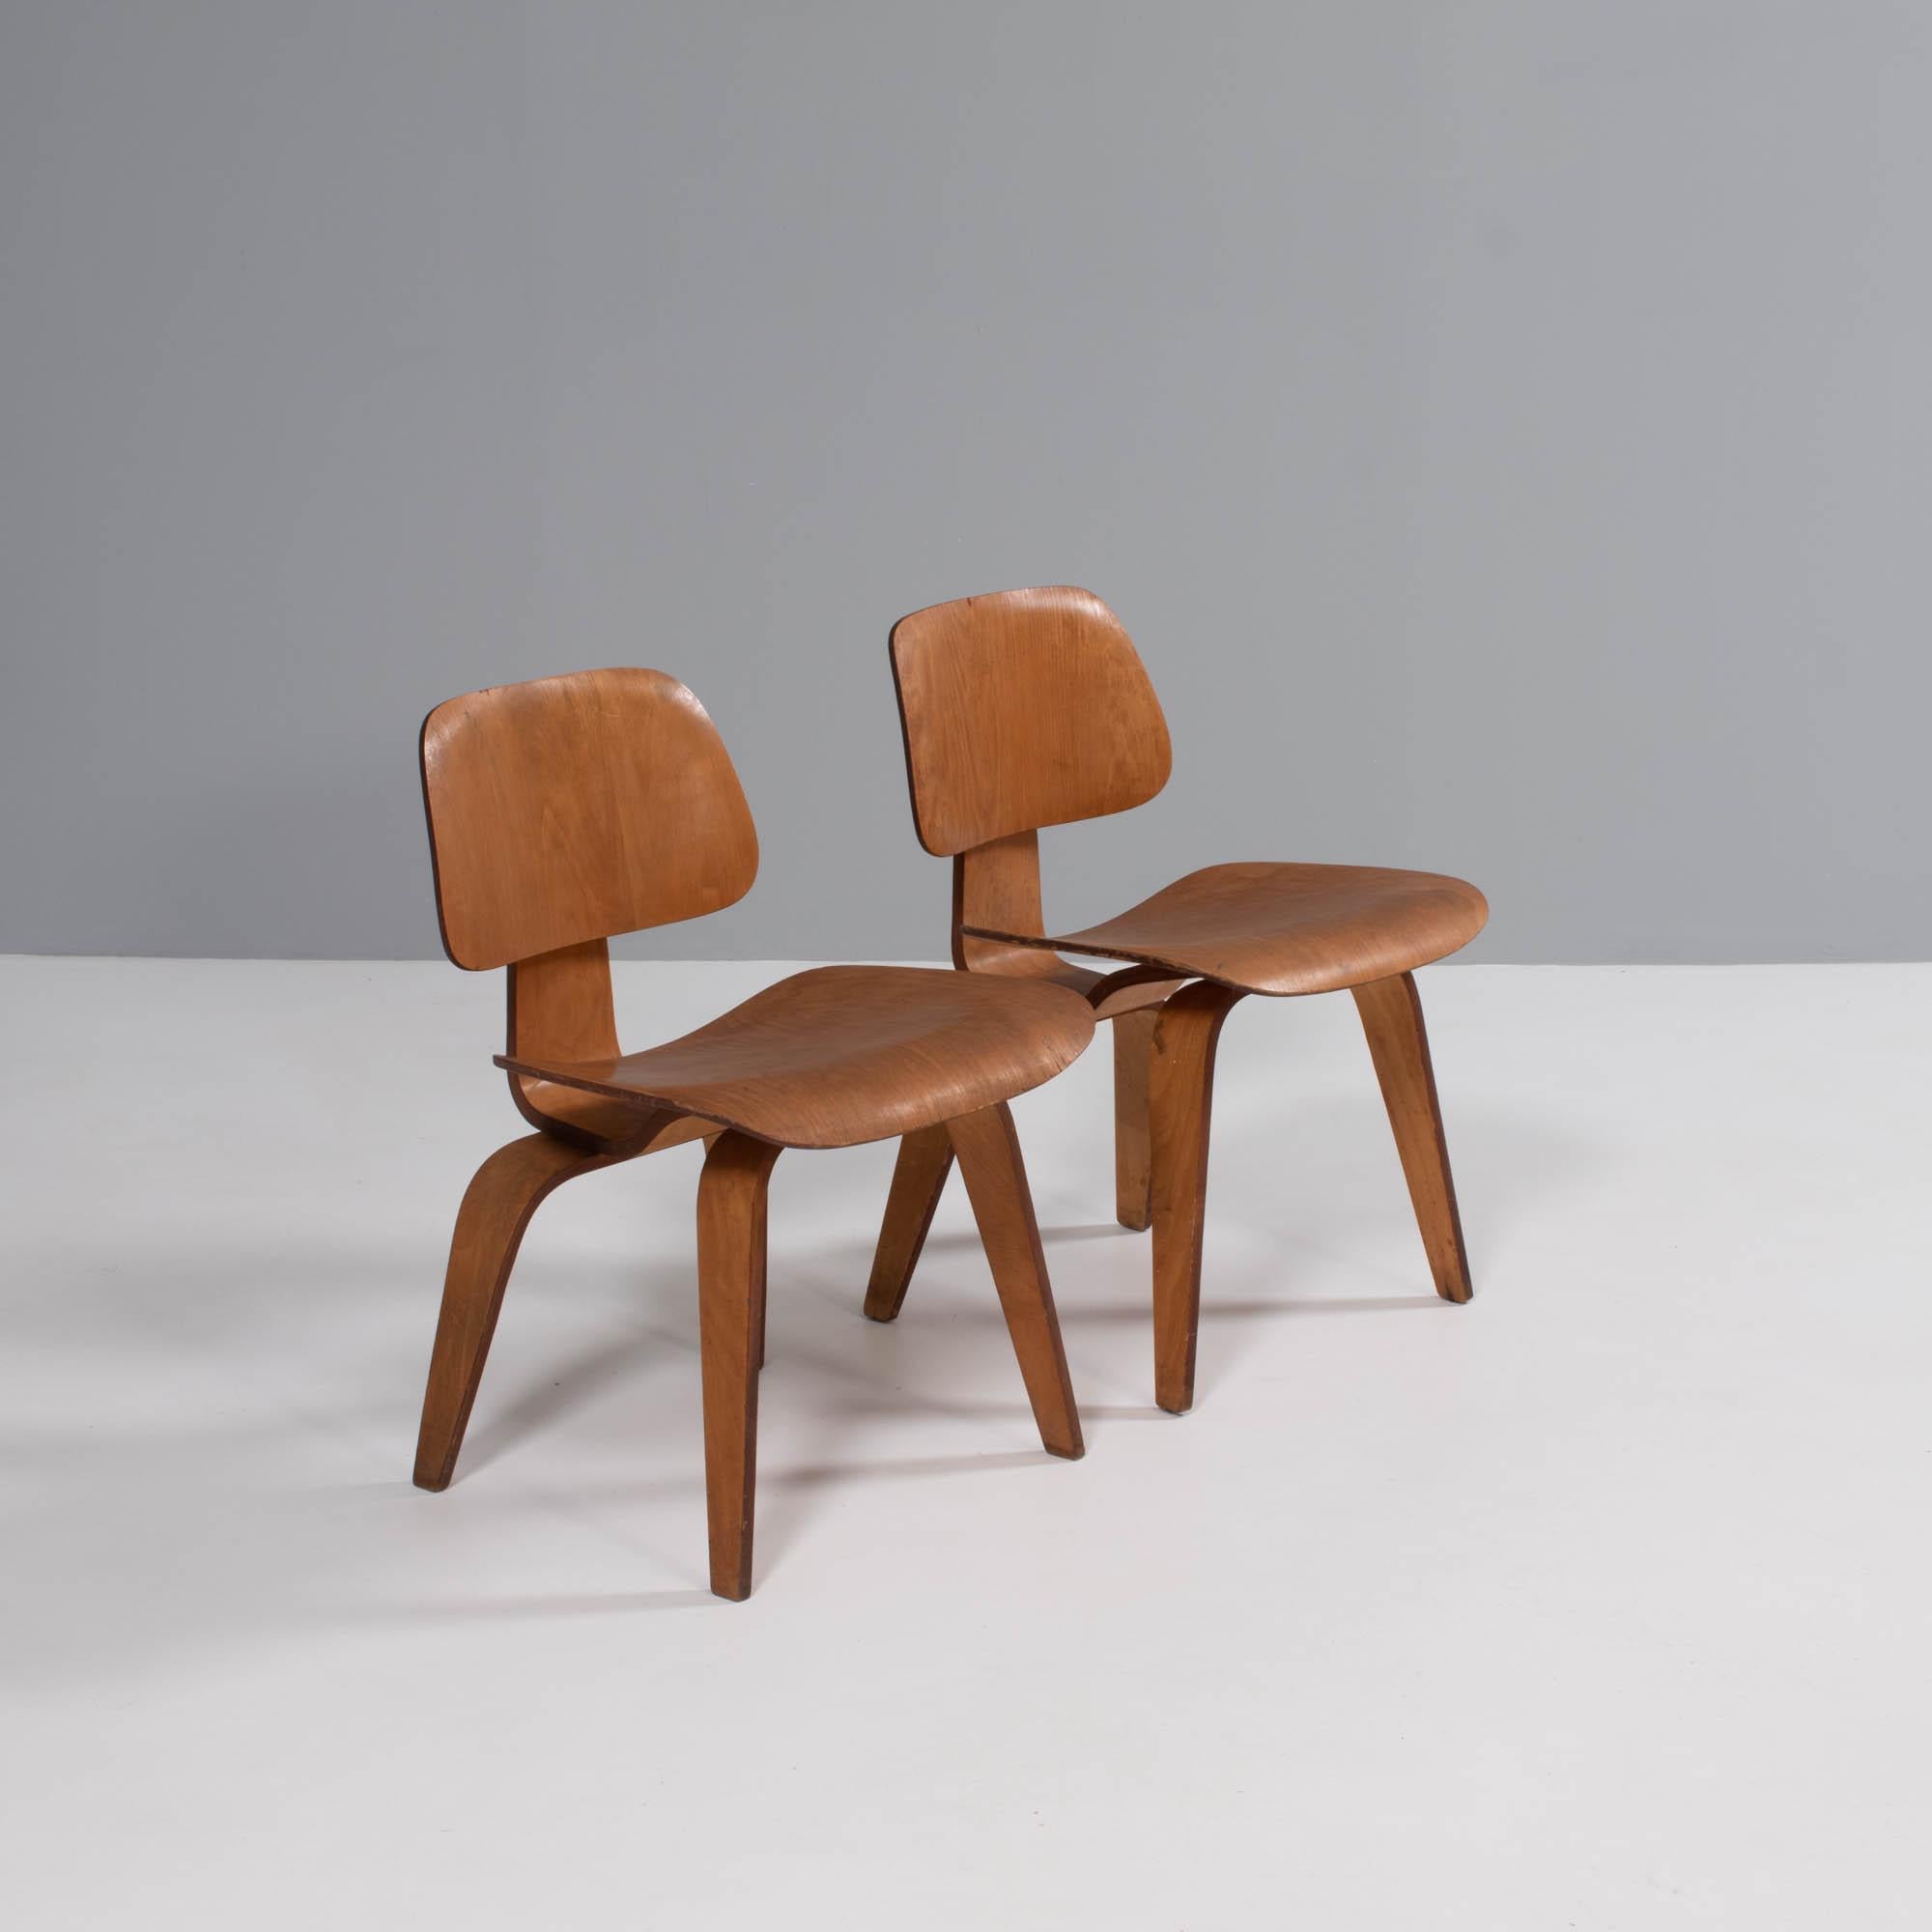 La chaise DCW a été lancée à l'origine en 1946, et Herman Miller a repris la fabrication des chaises en 1950. Cela a duré jusqu'en 1953, date à laquelle les chaises ont été retirées de la production jusqu'en 1994. 

Ces chaises sont de la 2ème